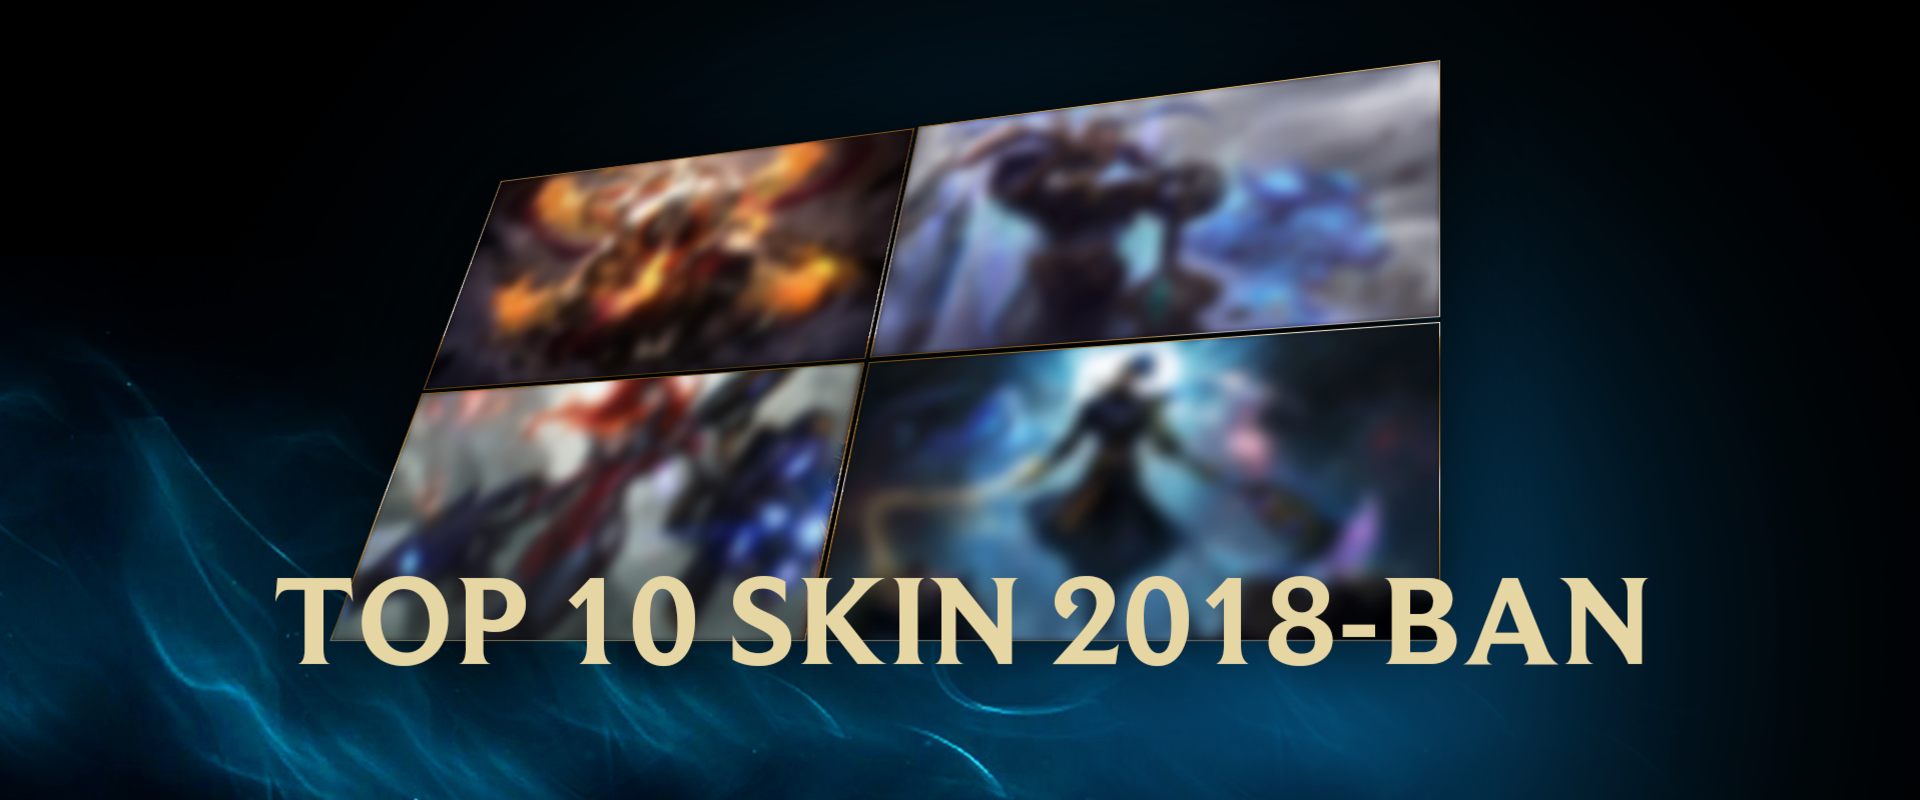 A 10 legjobb skin 2018-ban, szerintetek!